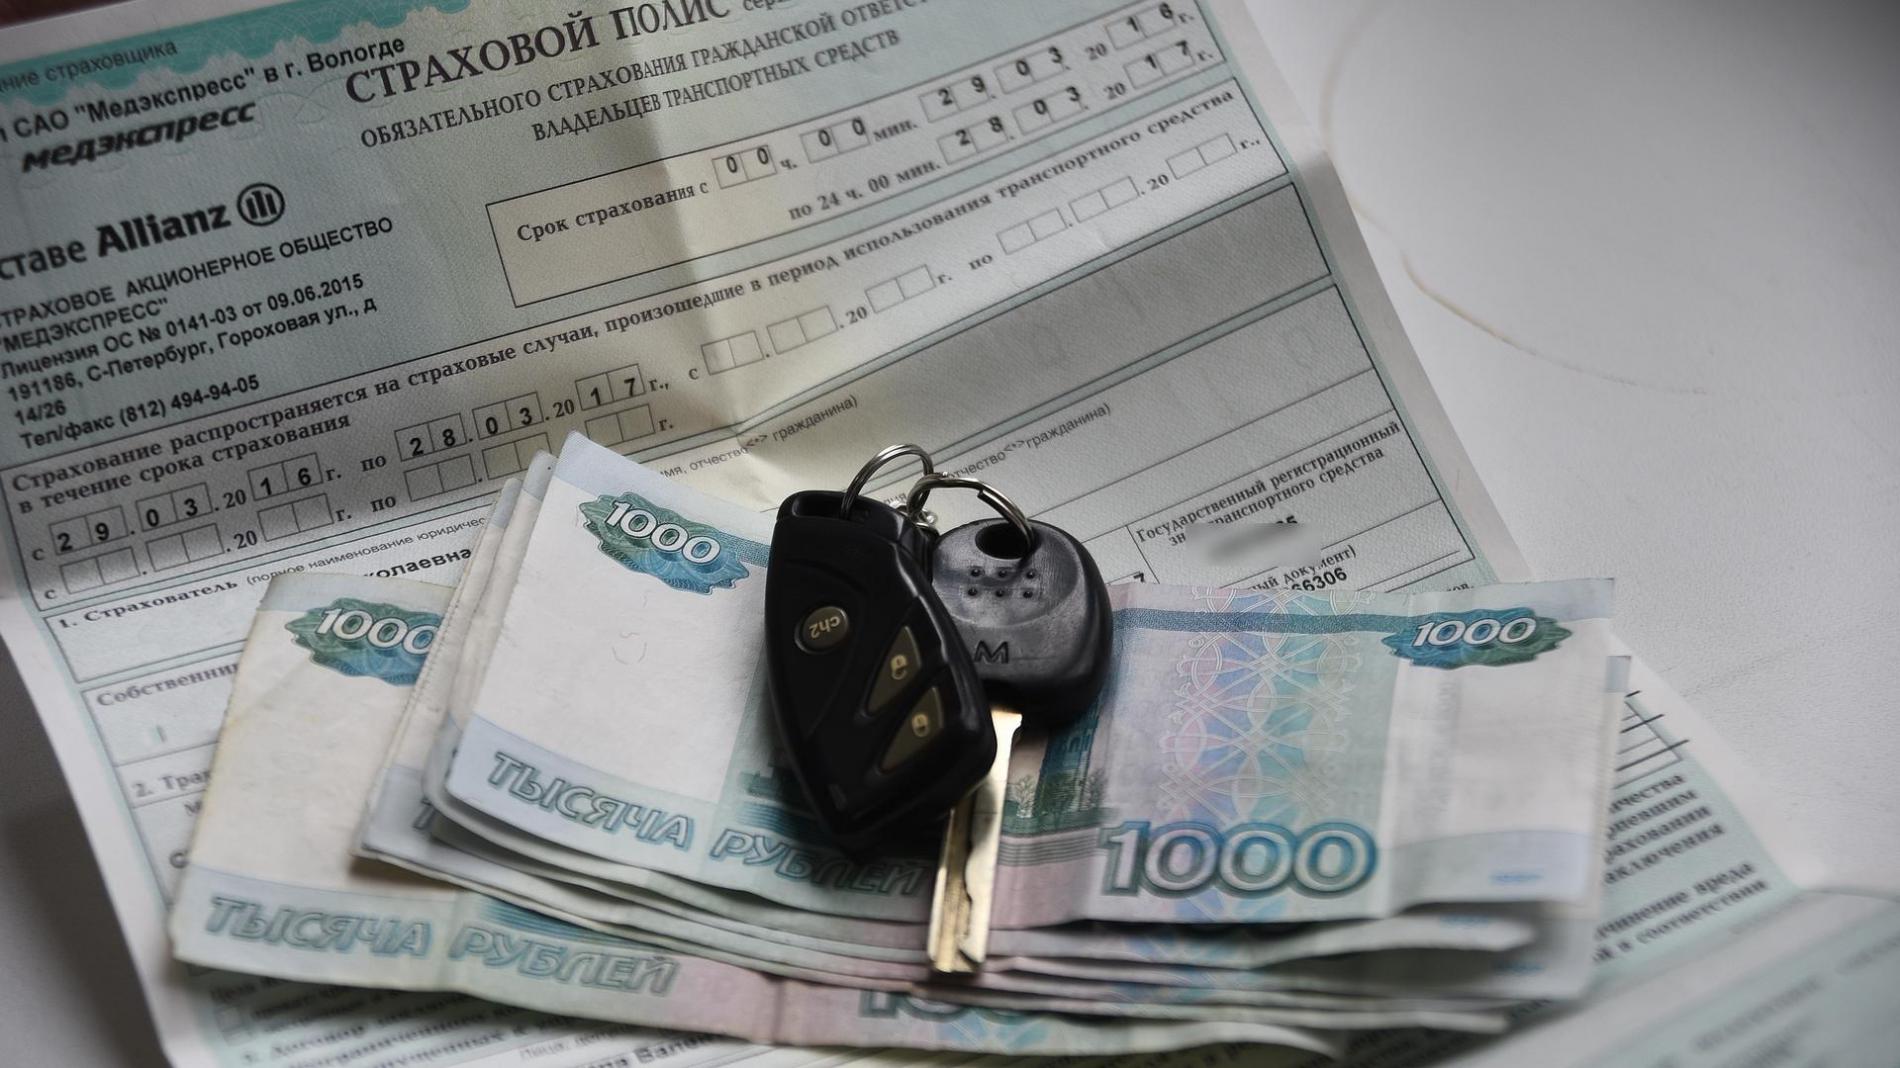 Защитите свои права: как получить возврат денег за незаконные услуги при приобретении автомобиля